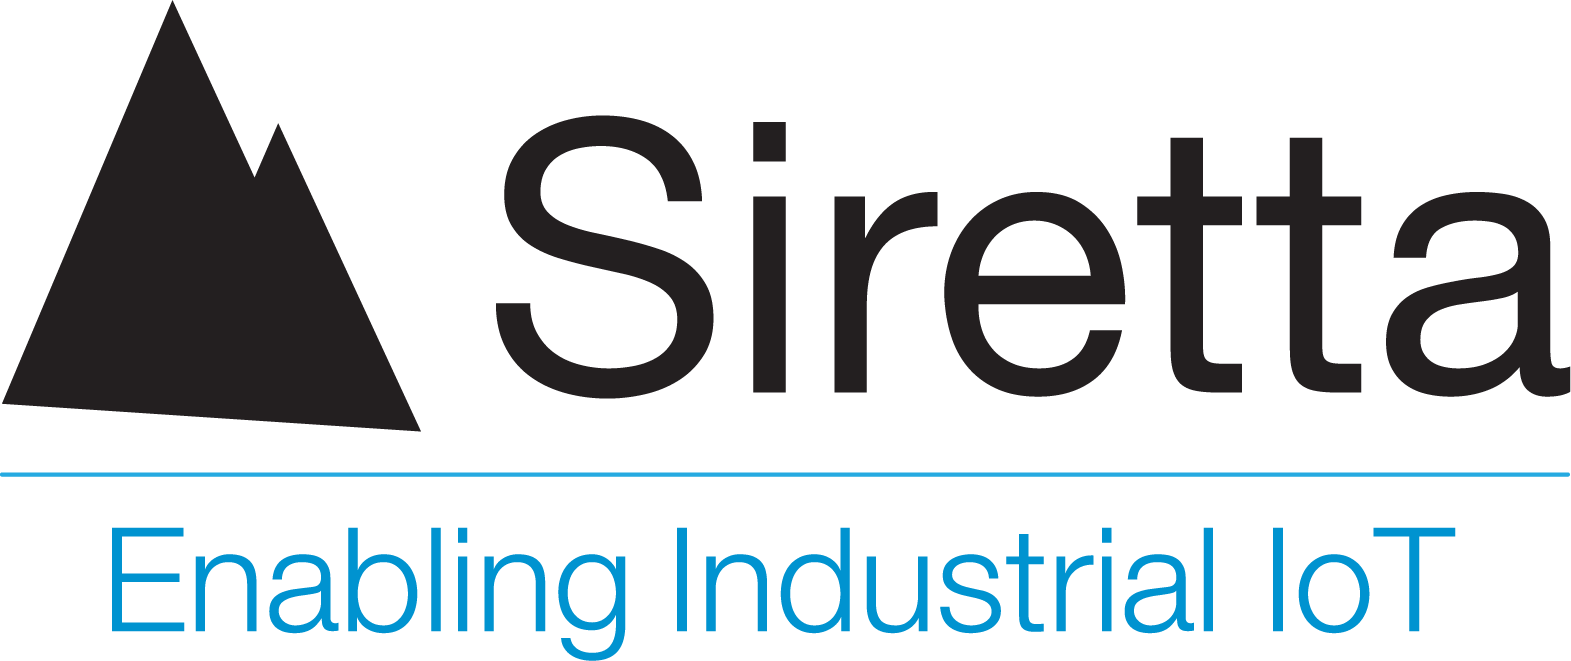 Siretta Ltd